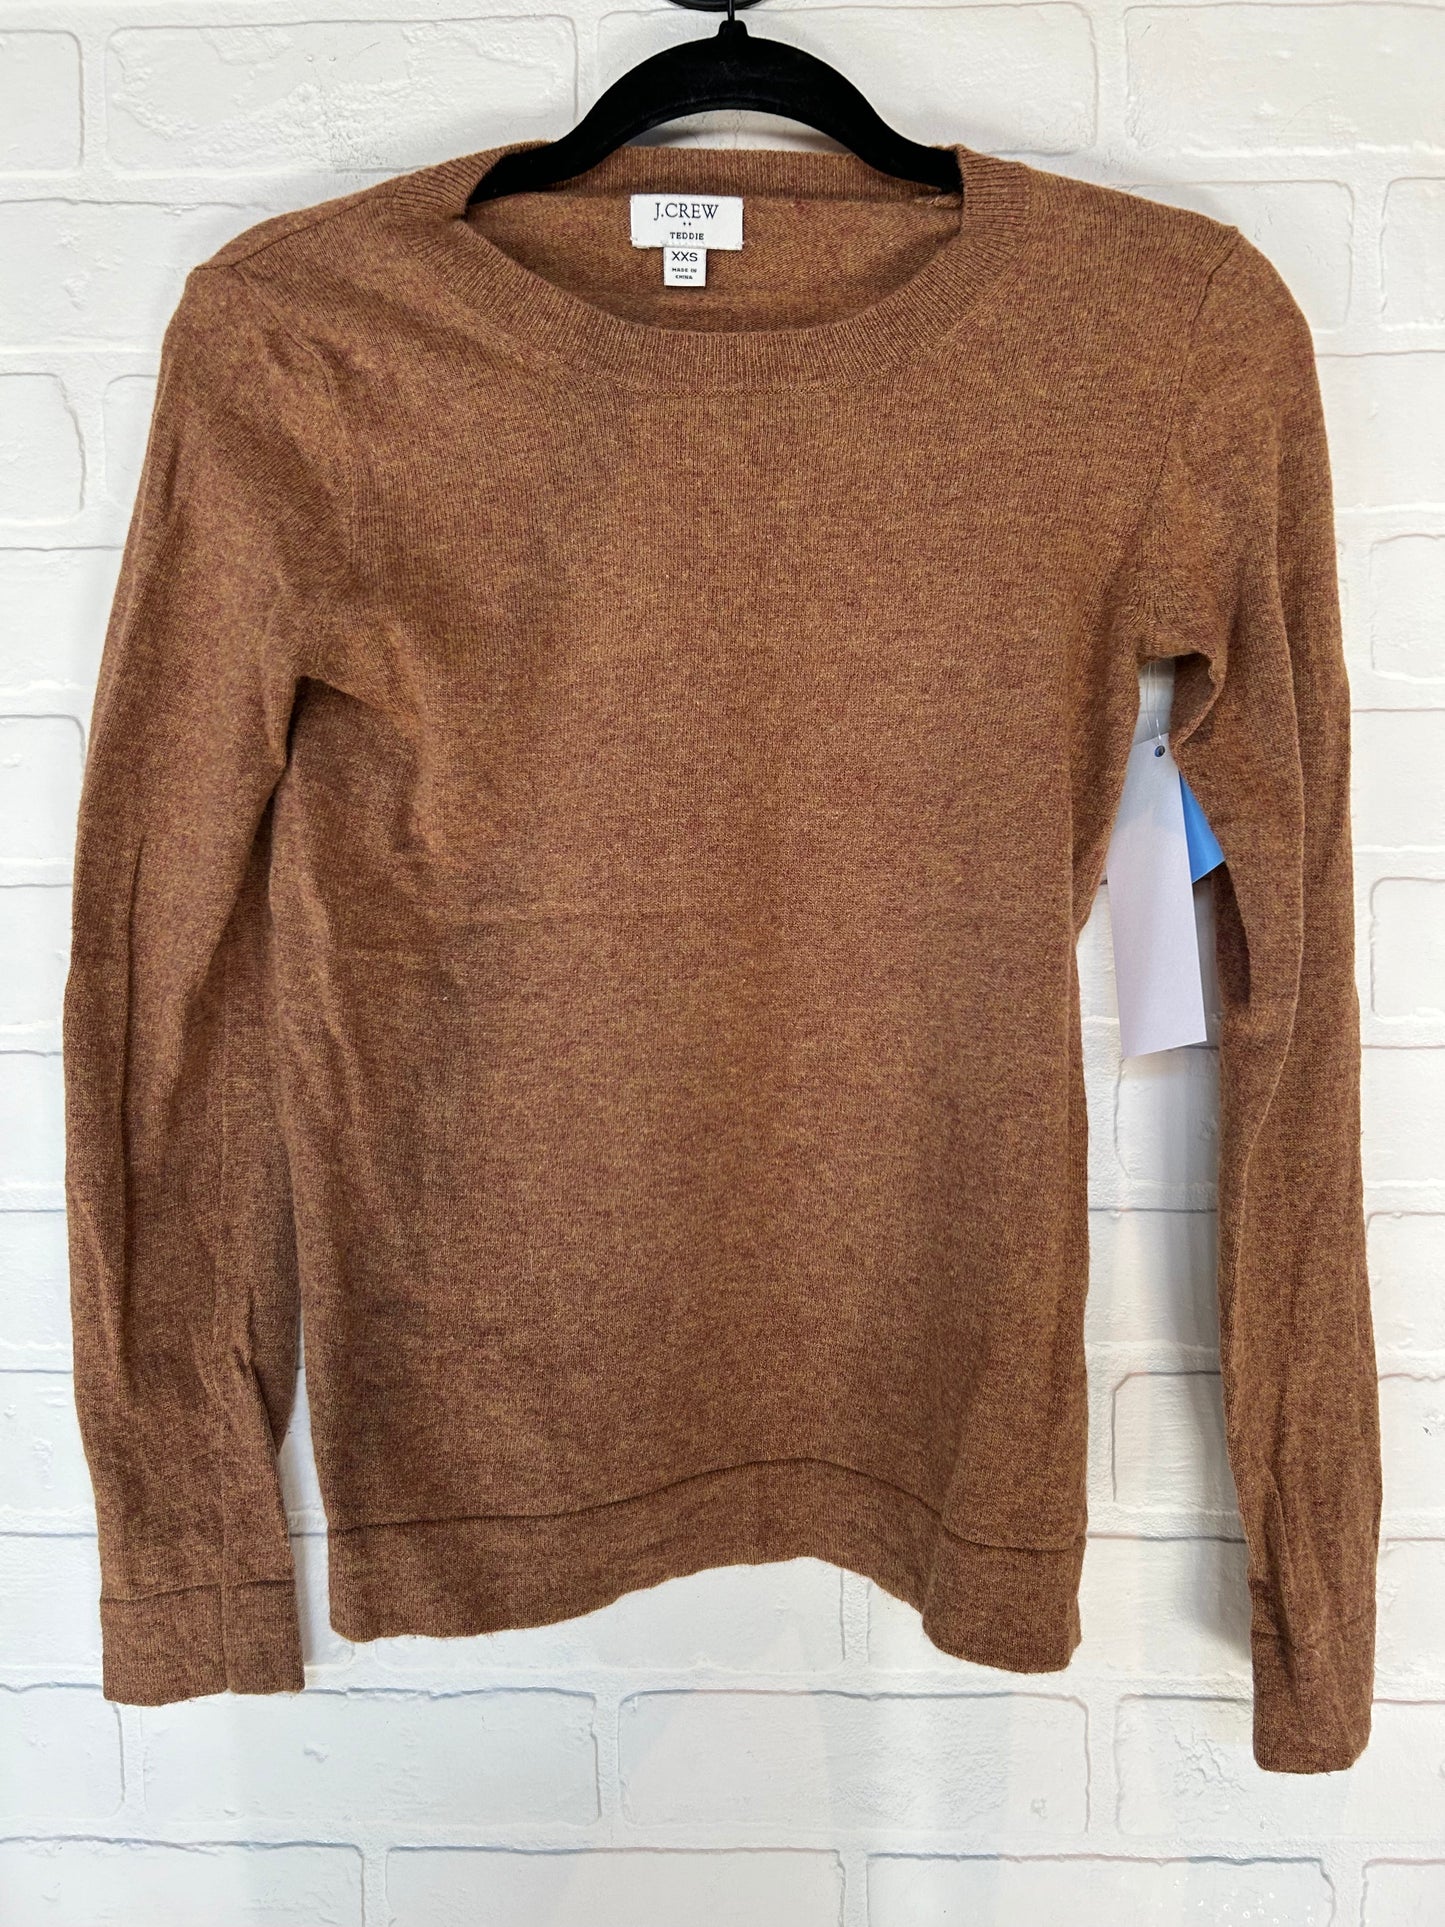 Brown Sweater J Crew, Size Xxs